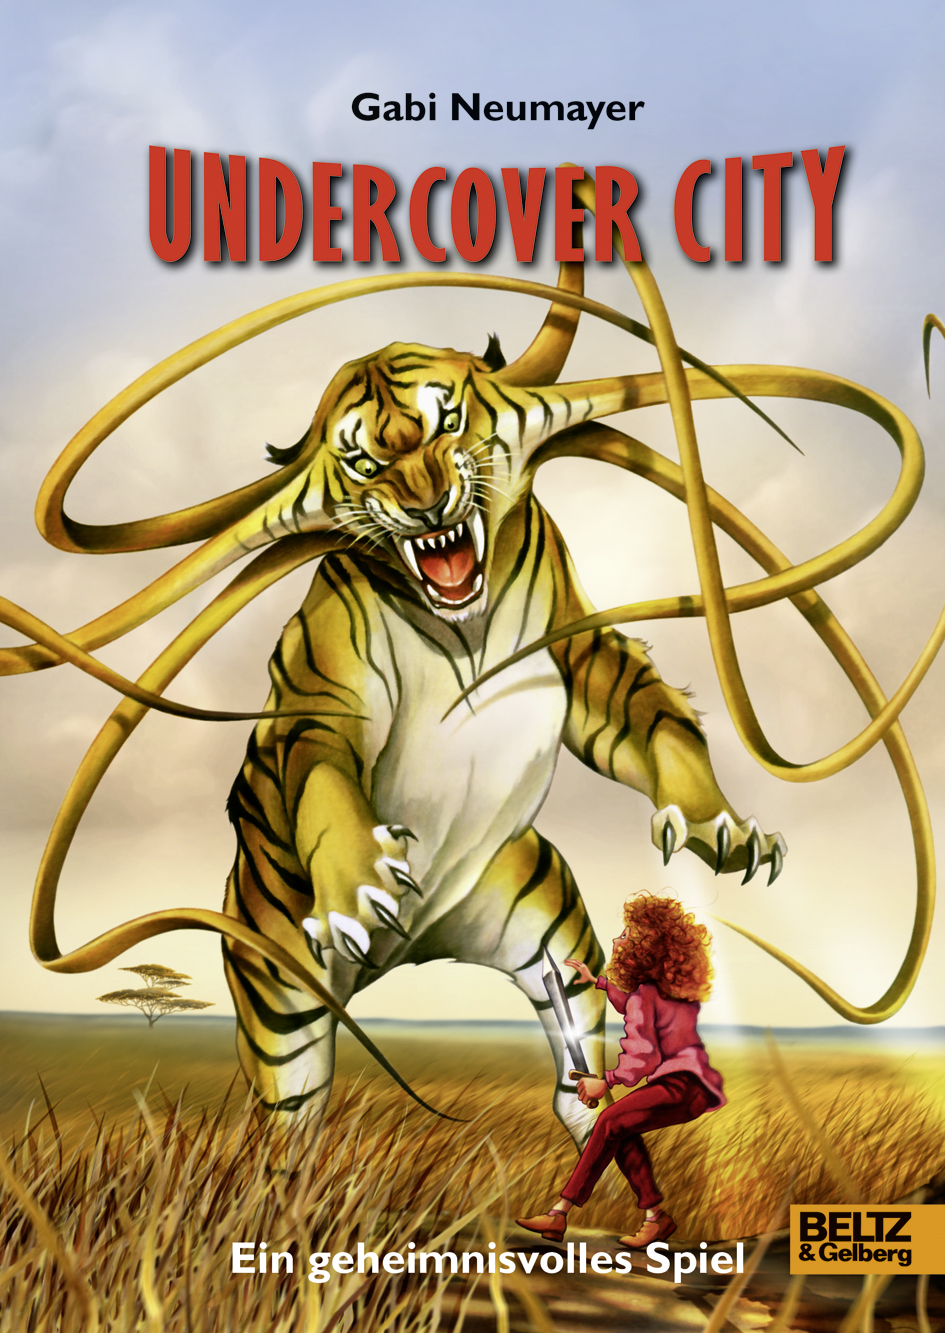 Gabi NeumayerUndercover City. Ein geheimnisvolles Spiel – für Kinder verboten!